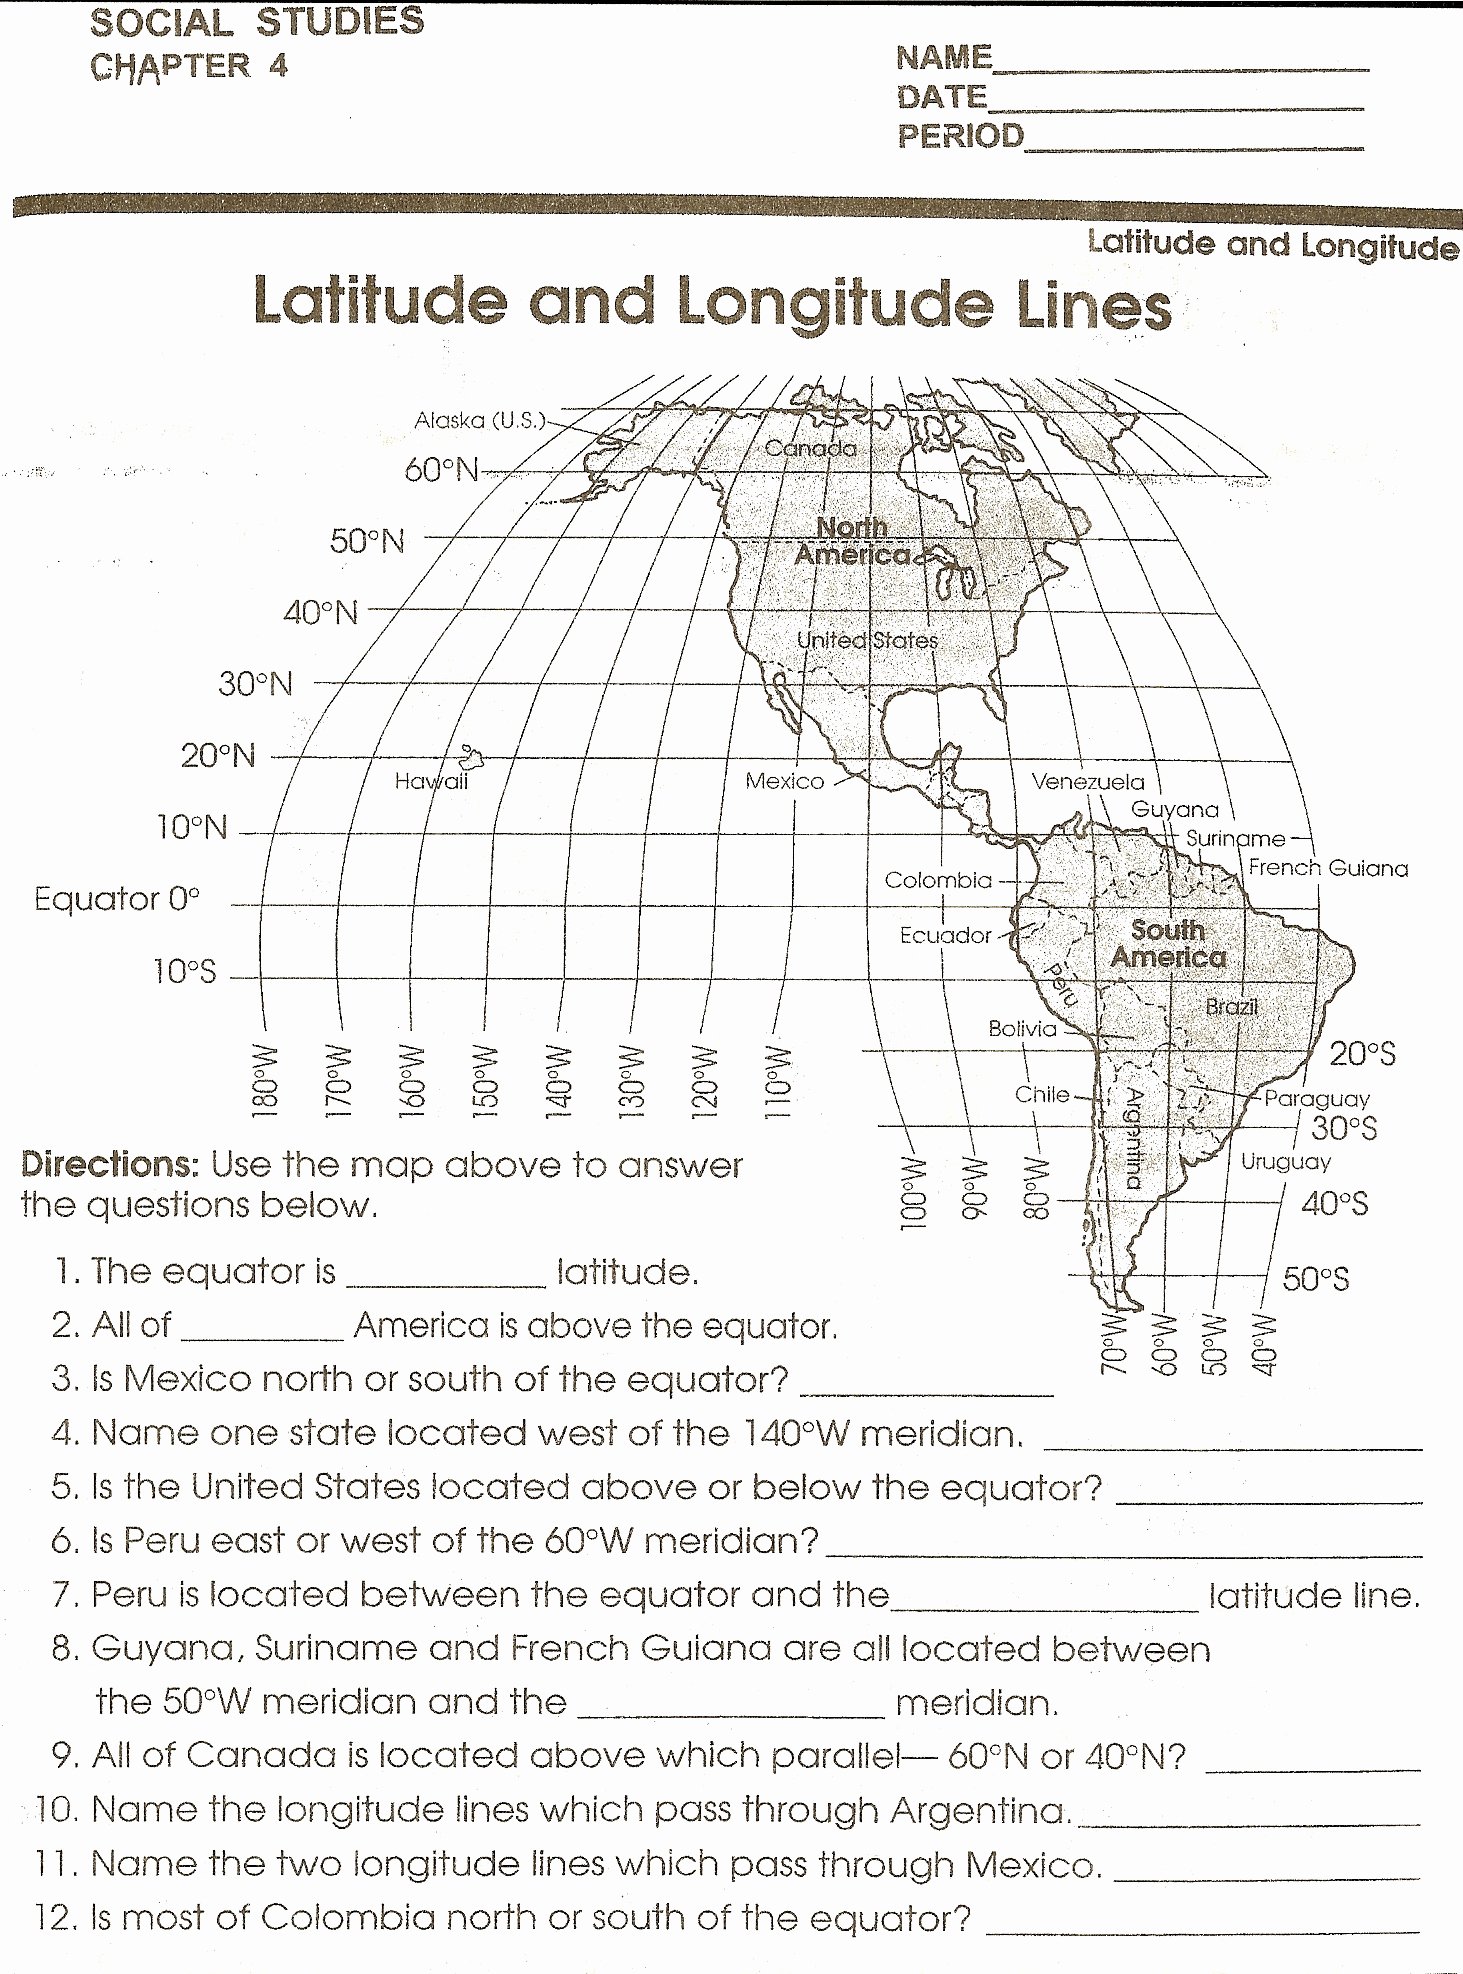 Latitude and Longitude Worksheet Answers Fresh social Stu S Skills